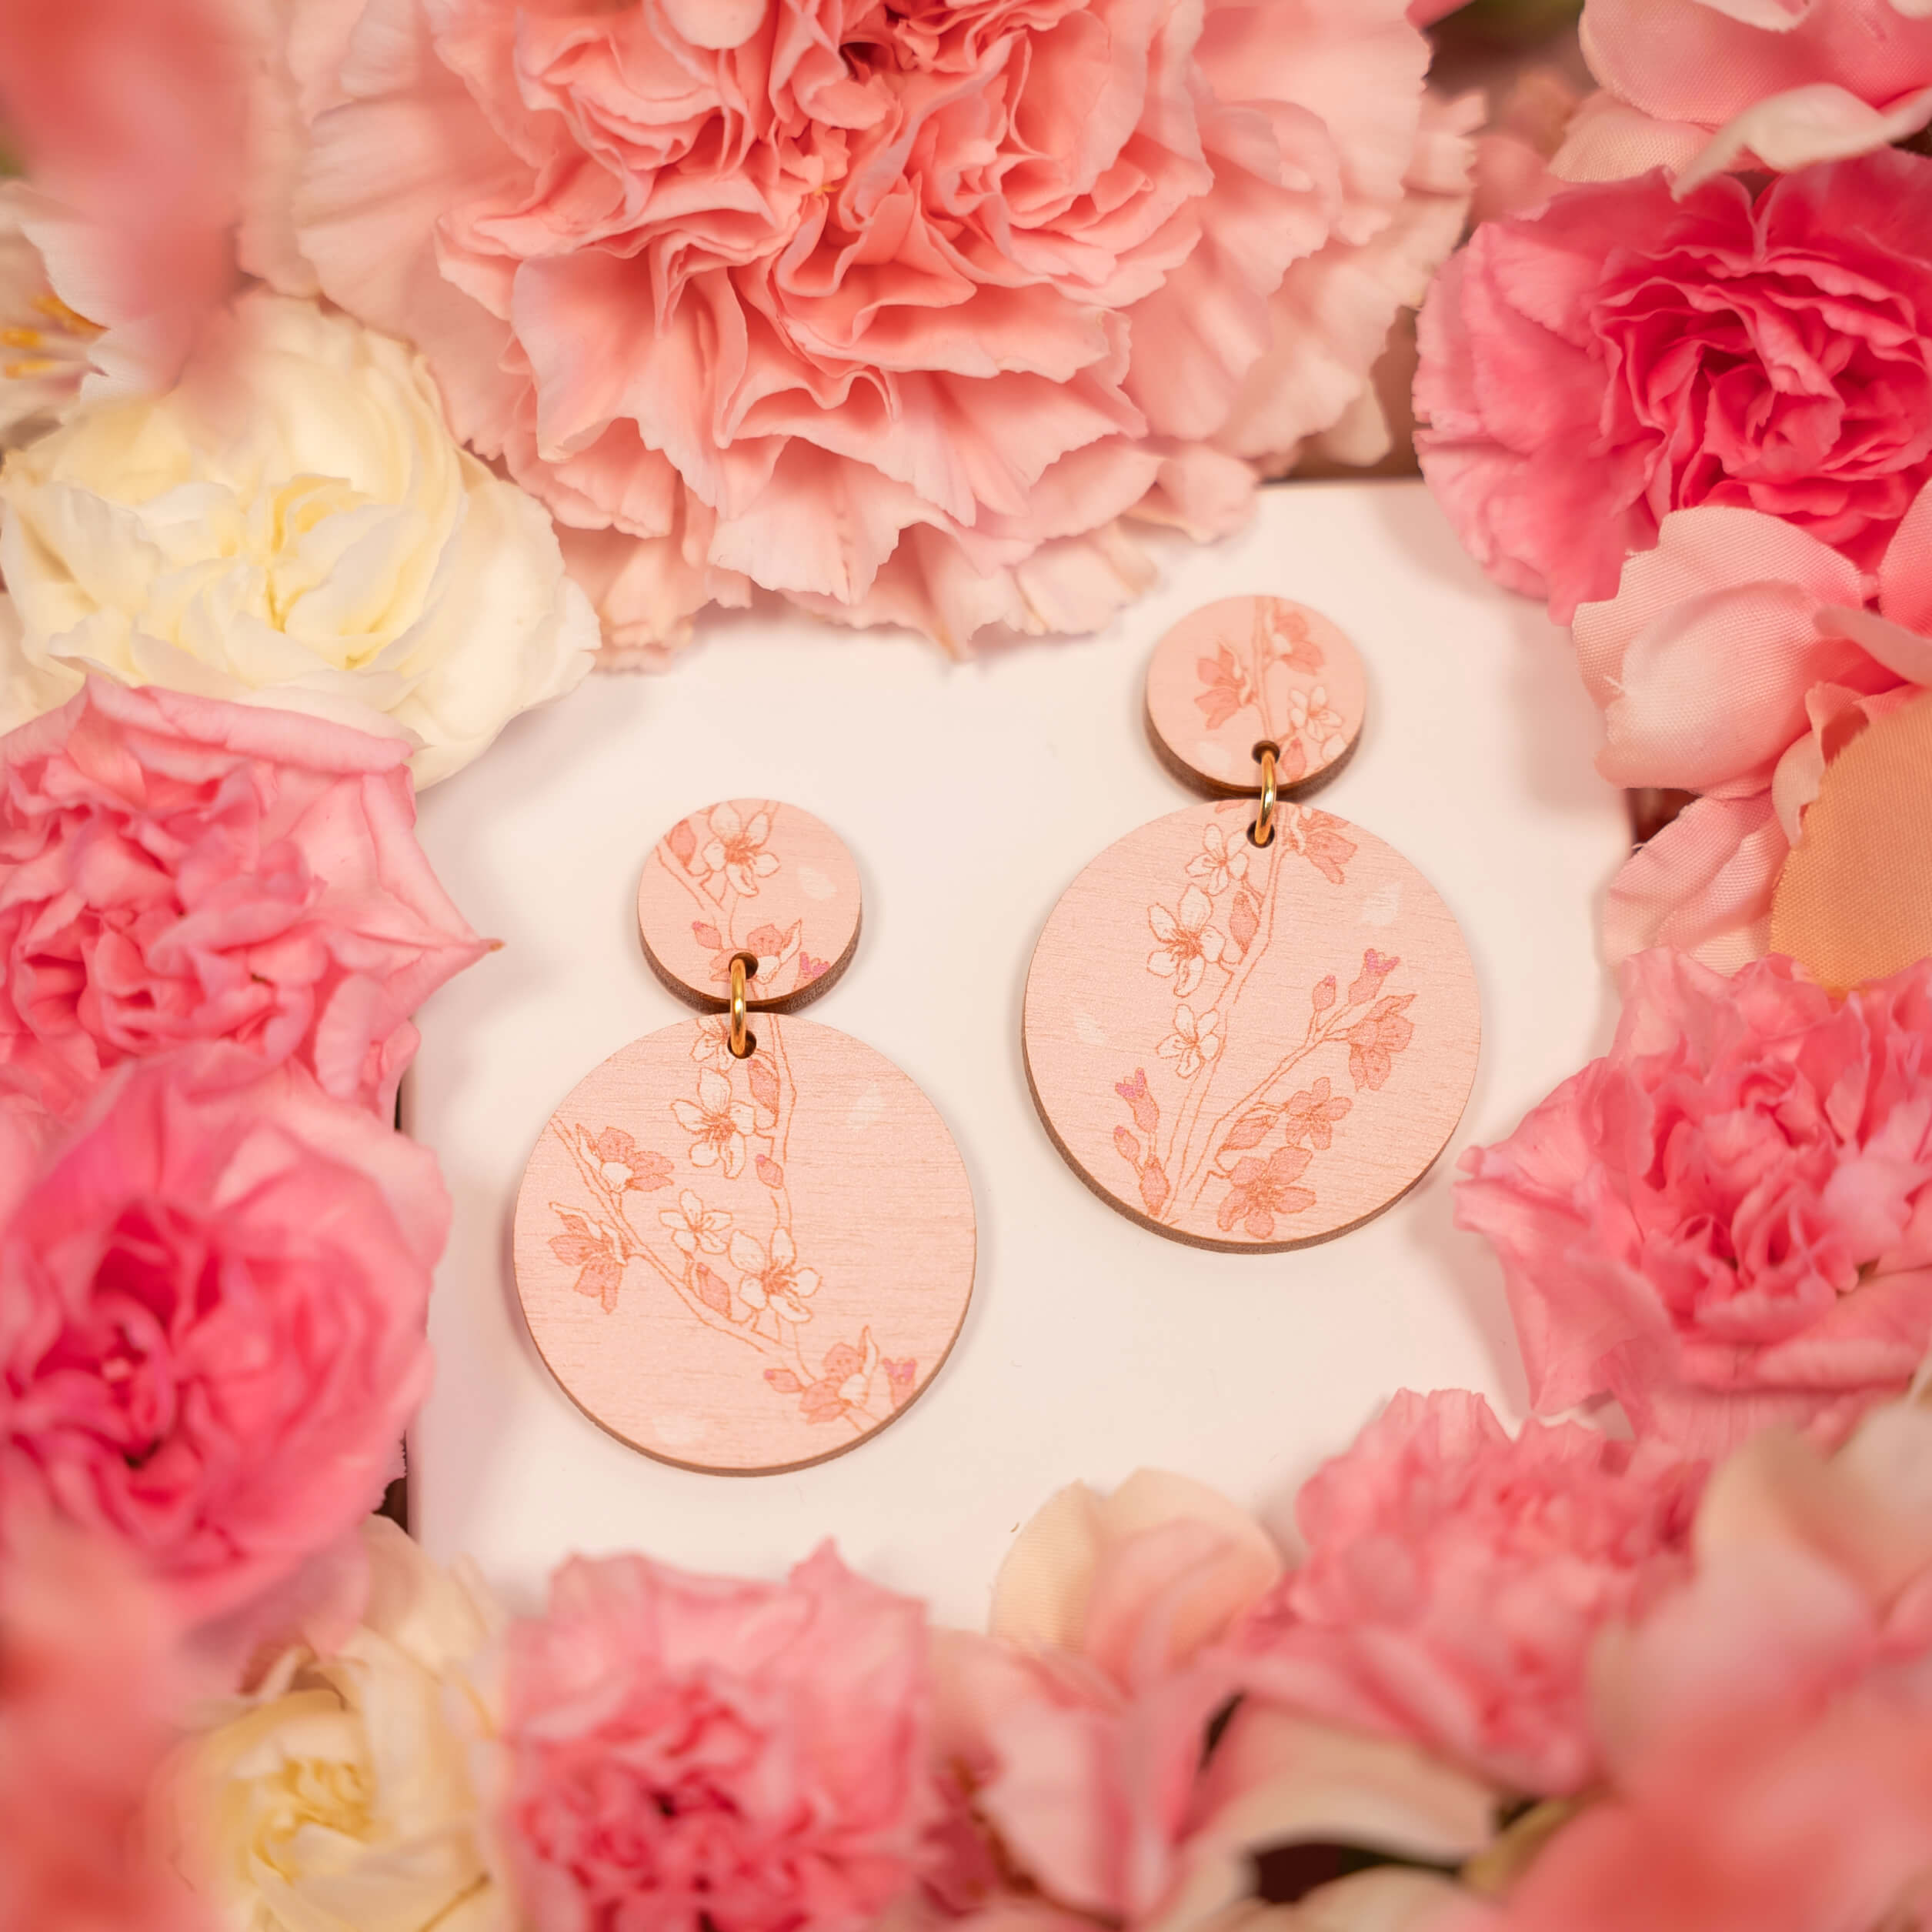 Sakura unelma -koru heijastaa vaaleanpunaisten unelmien ja kirsikankukkien suloista kauneutta. Lempeä vaaleanpunainen tausta ja herkät kukat kilpailevat keskenään hattaranpehmeistä unelmista, tehden tästä täydellisen vaaleanpunaisen korun. Sakura unelma -korvakoru on valmistettu Suomessa.